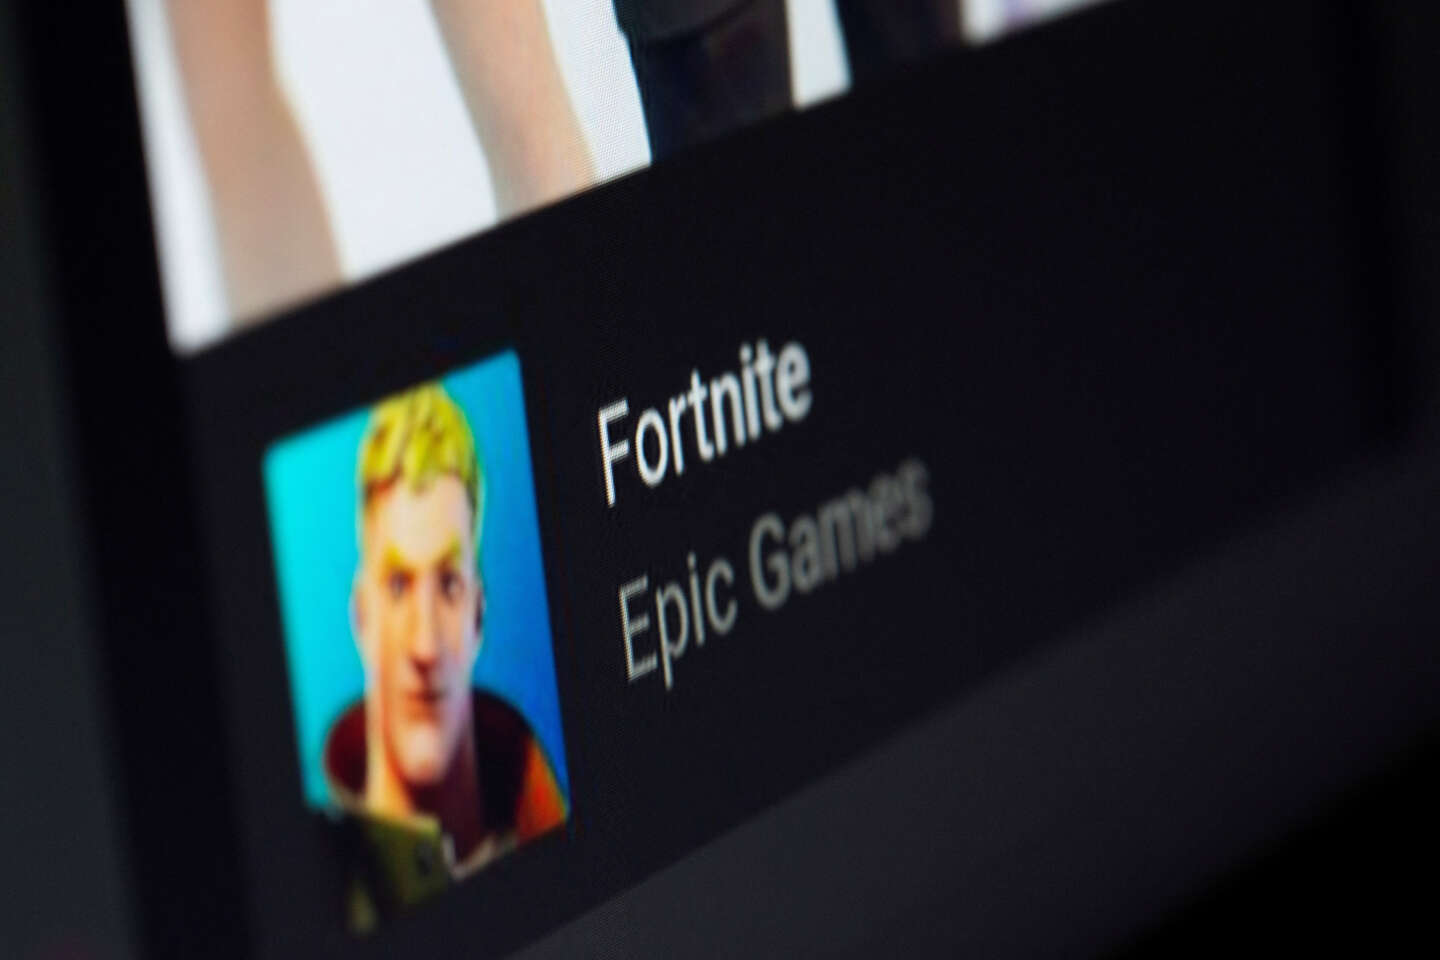 Regarder la vidéo « Fortnite » : l’éditeur Epic Games condamné à 1,1 million d’euros d’amende pour avoir poussé des enfants à l’achat